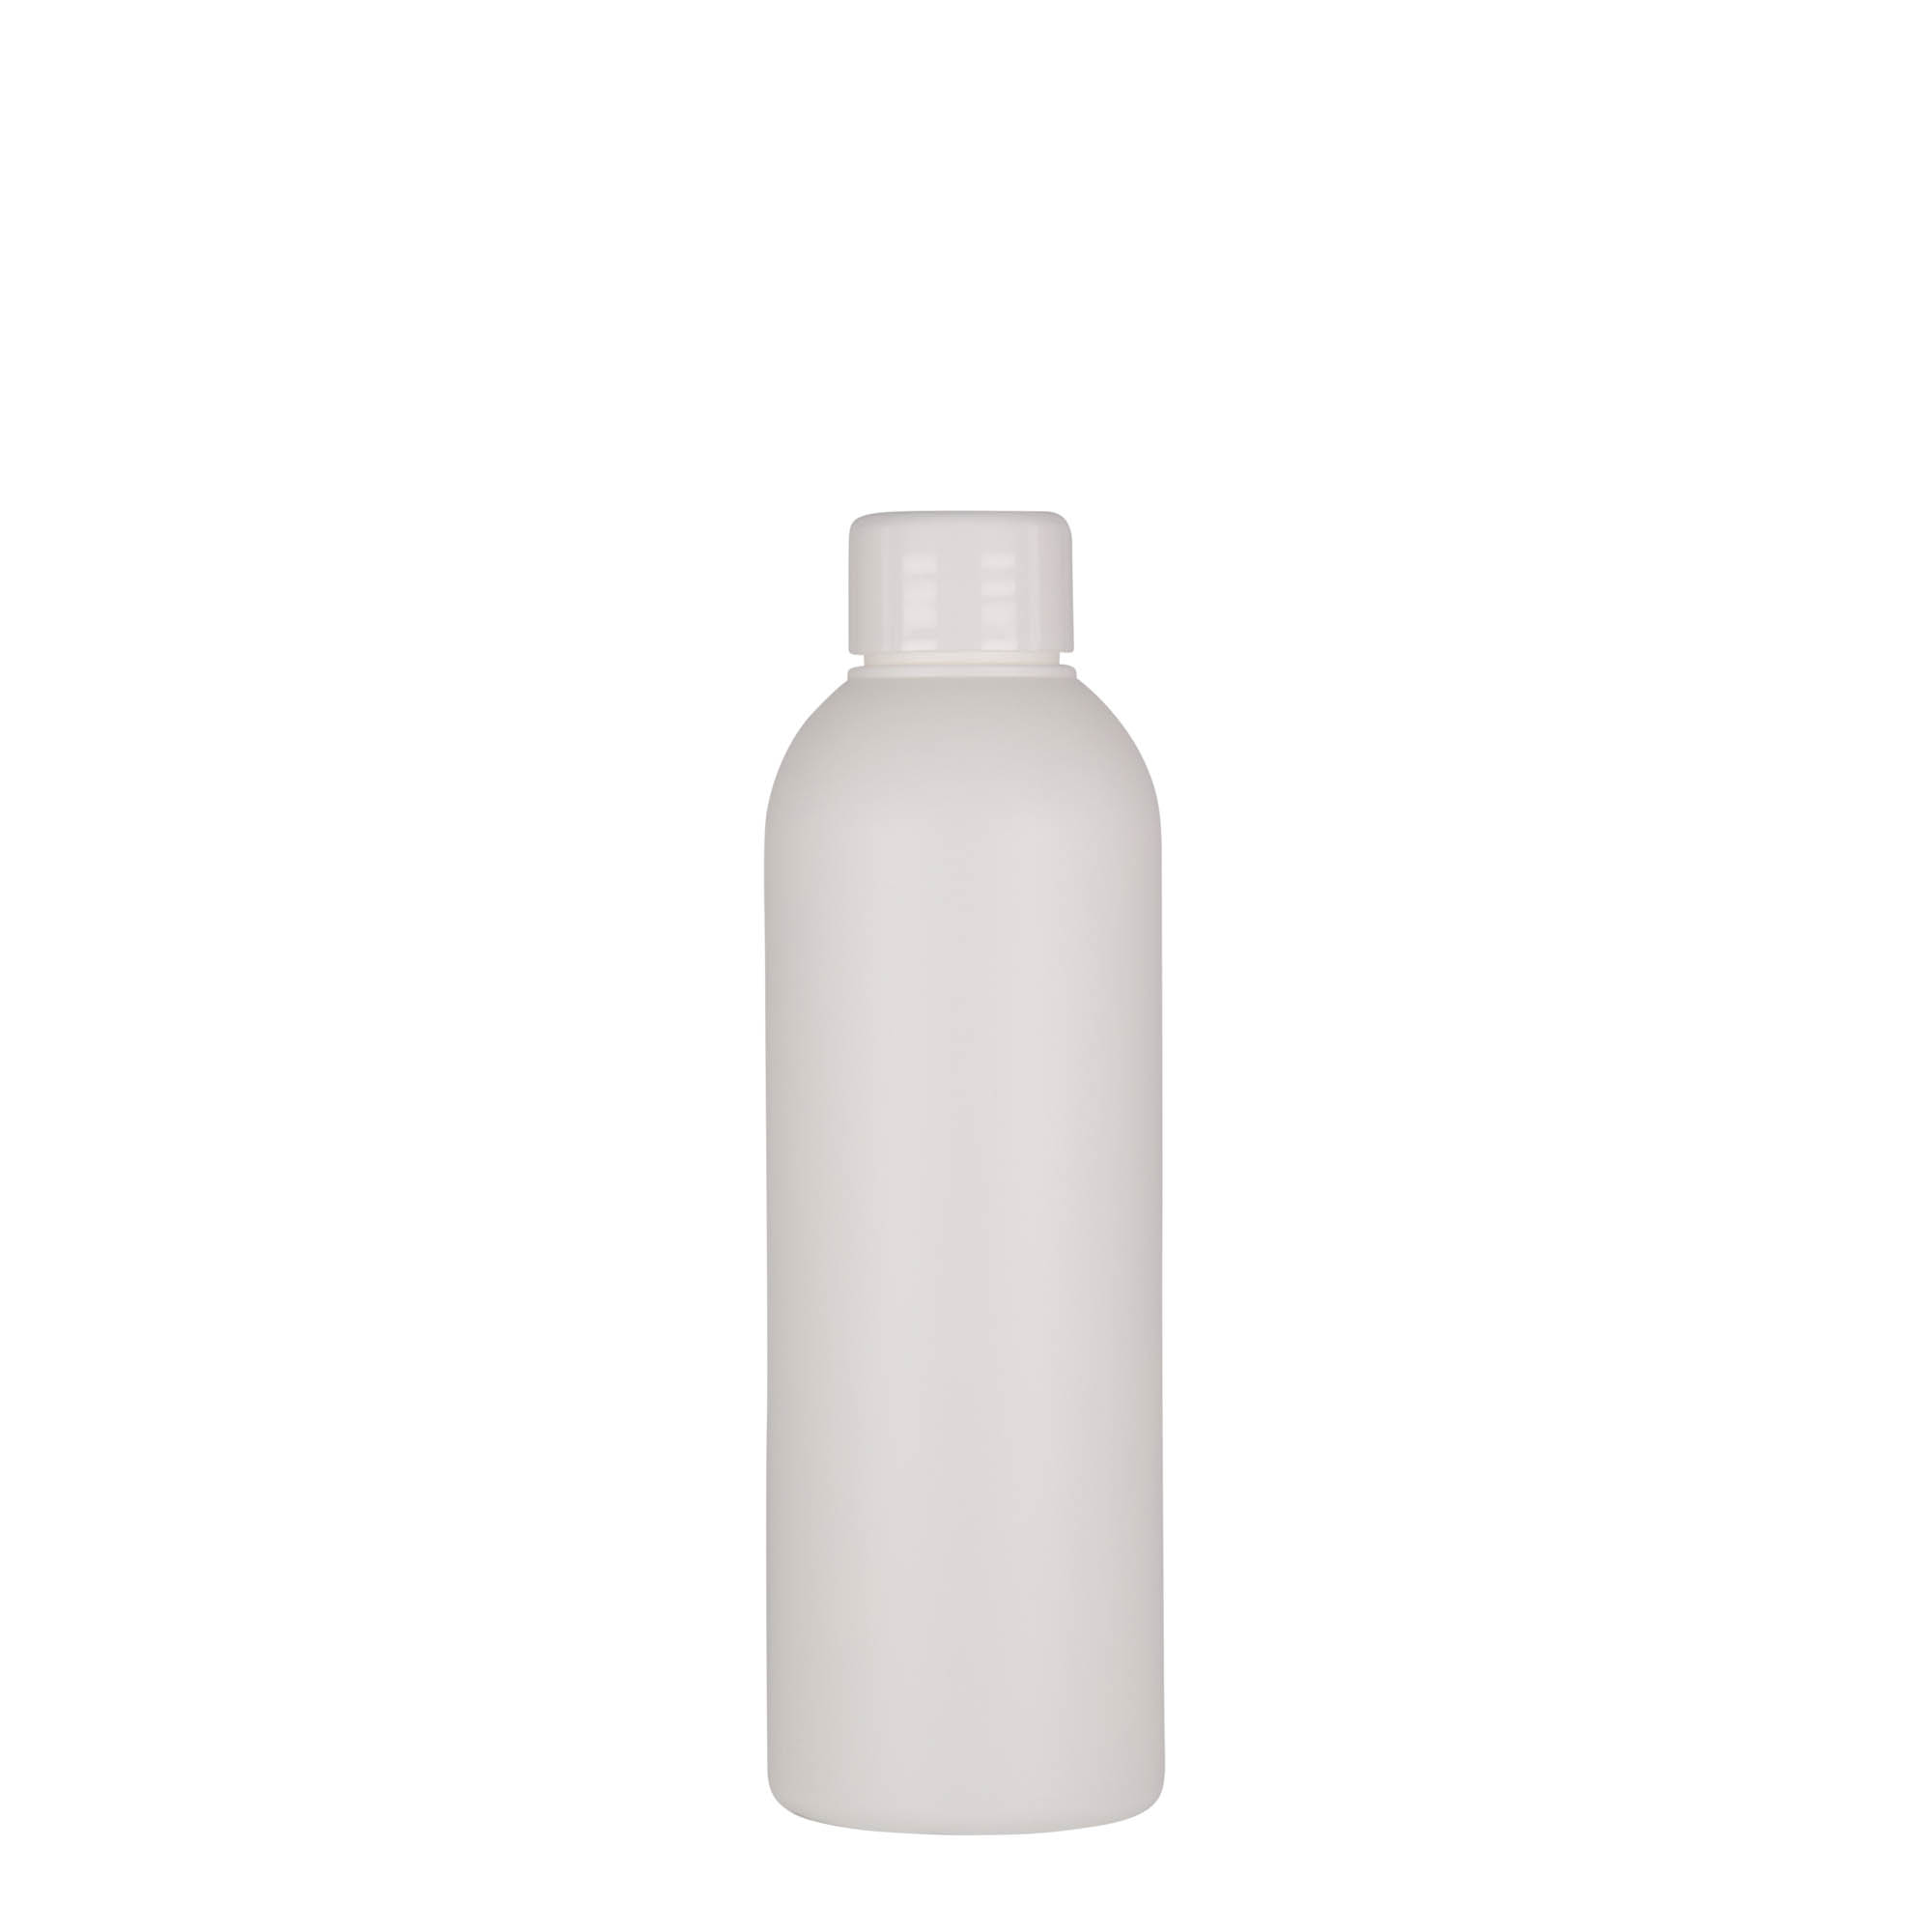 200 ml plastic bottle 'Tuffy', HDPE, white, closure: GPI 24/410